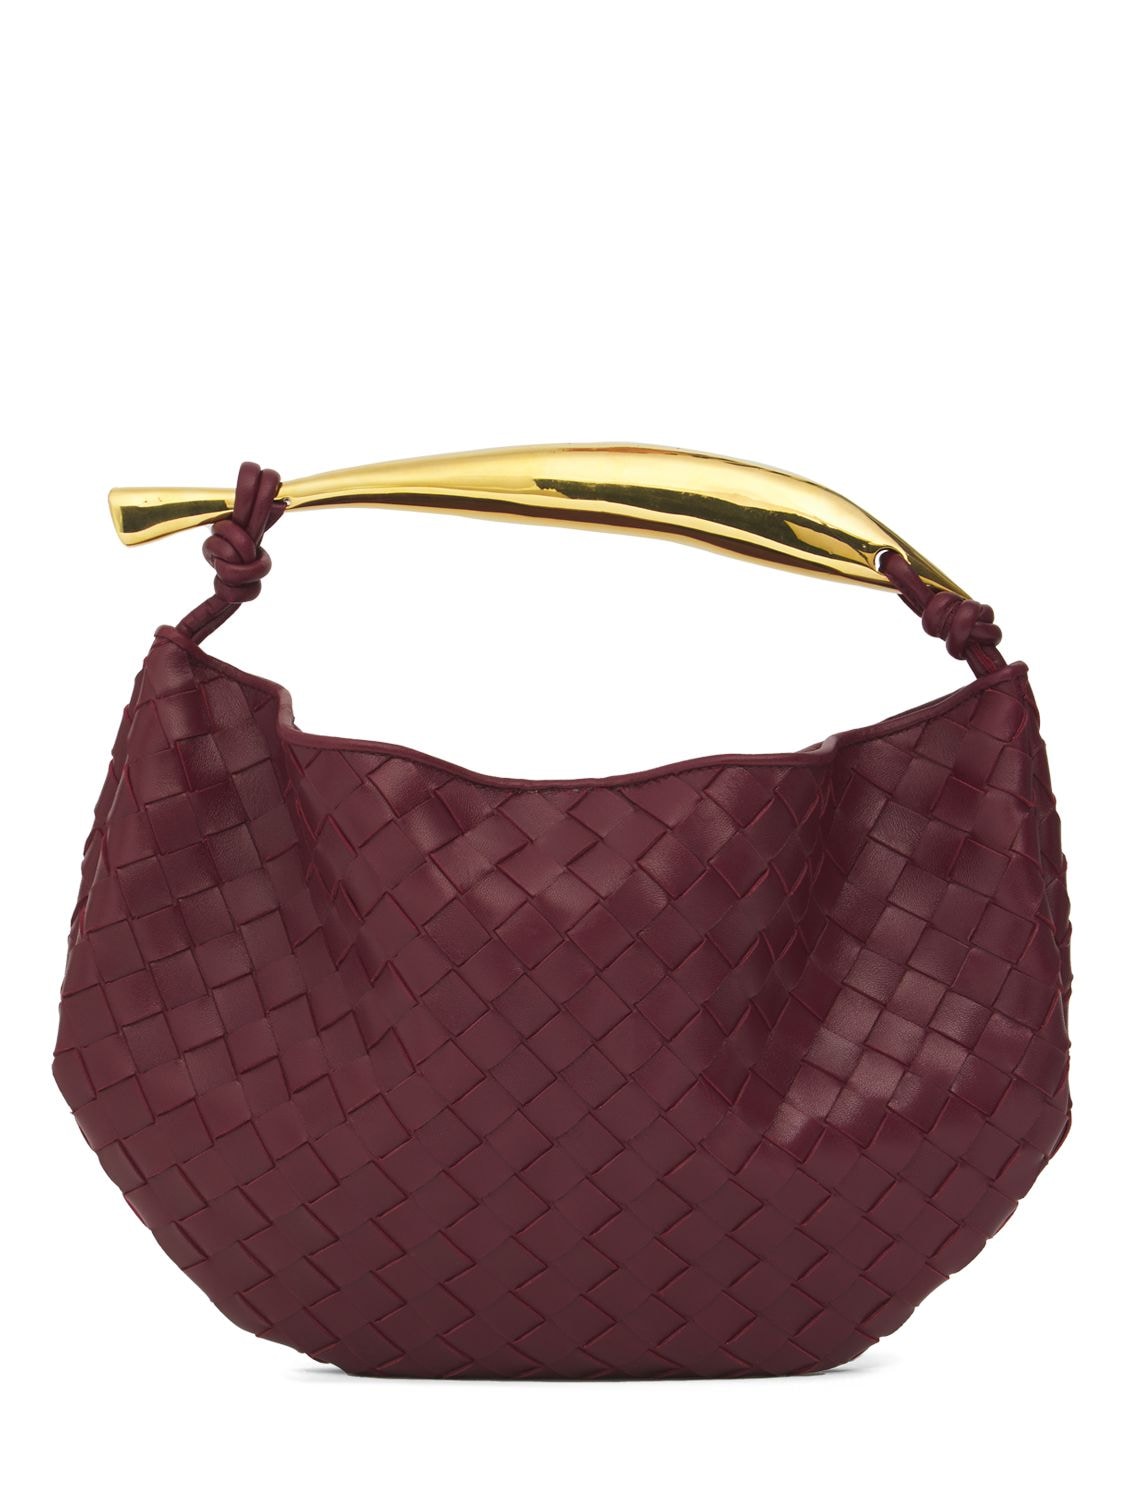 Bottega Veneta Women's Sardine Top Handle Bag